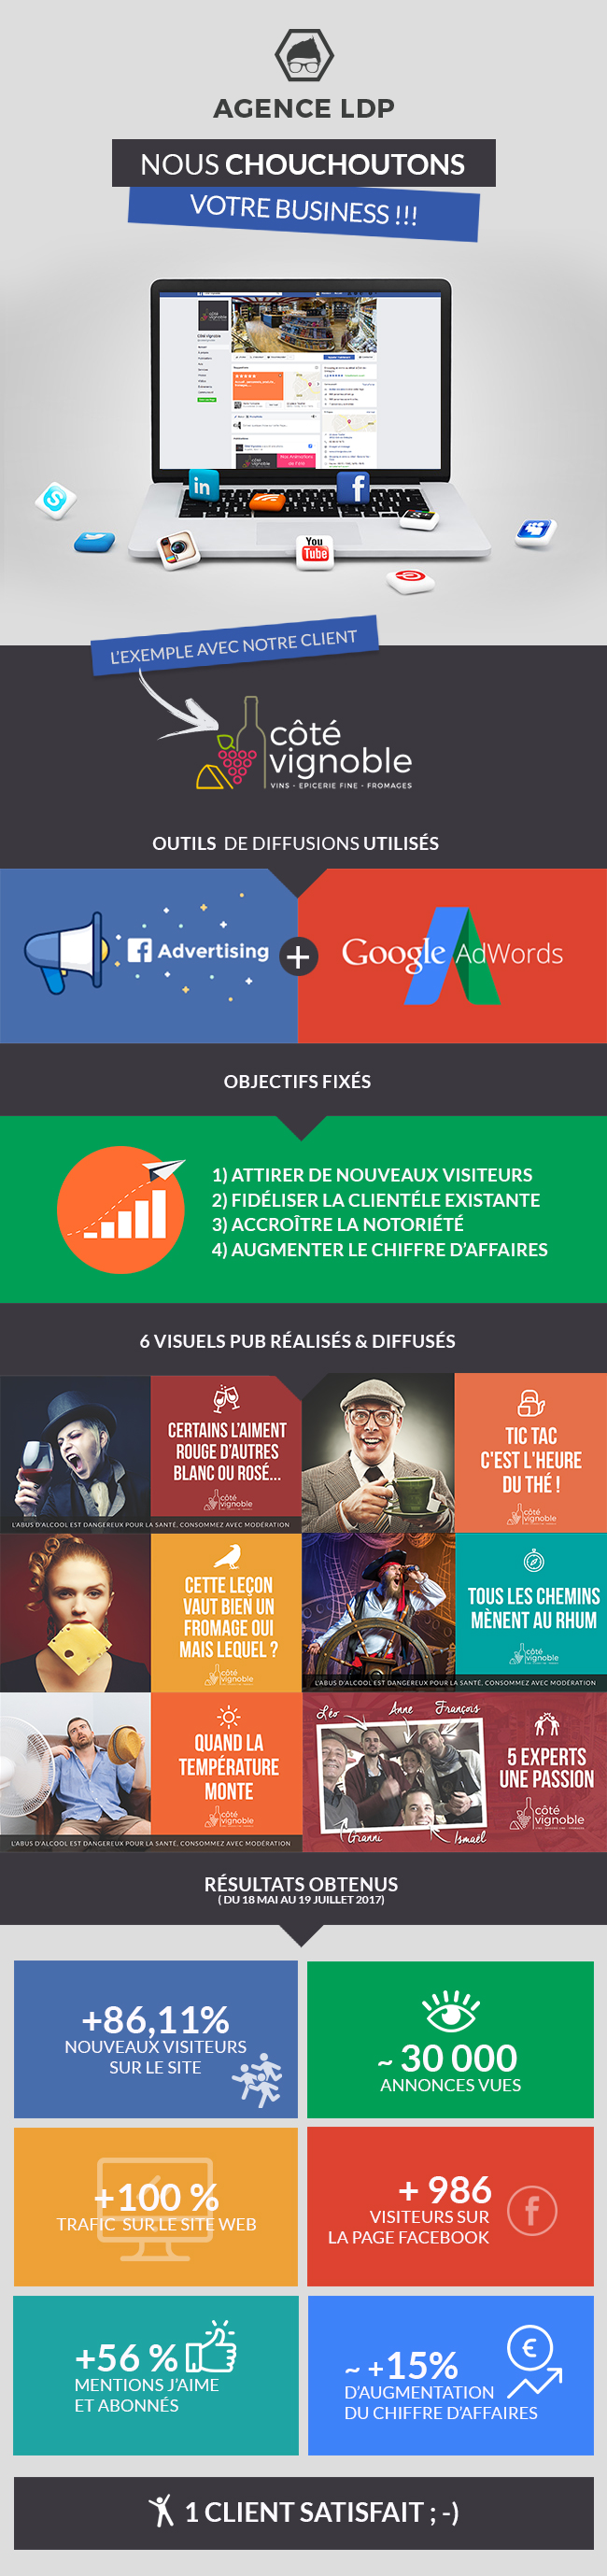 Agence LDP - Campagne Google et Facebook Ads pour Côté Vignoble